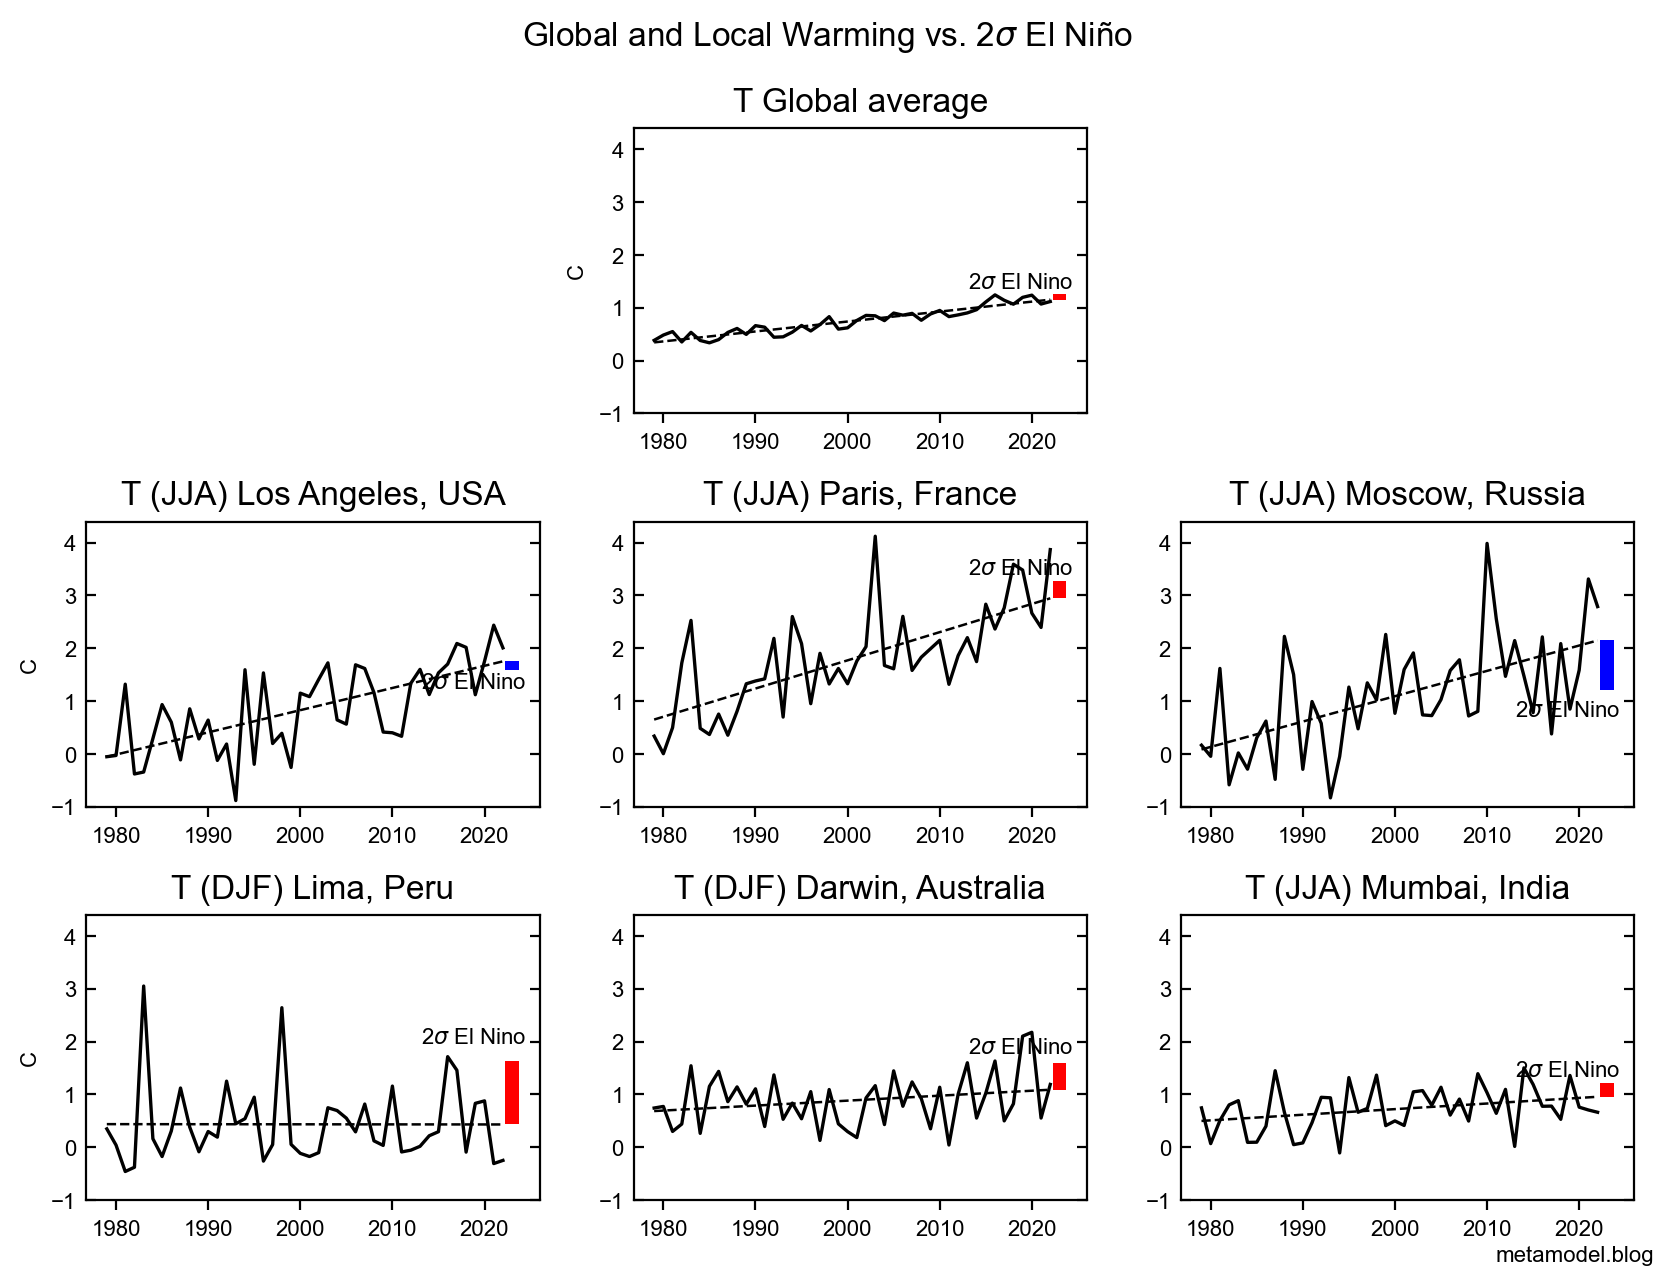 Global and Local Warming vs. El Nino